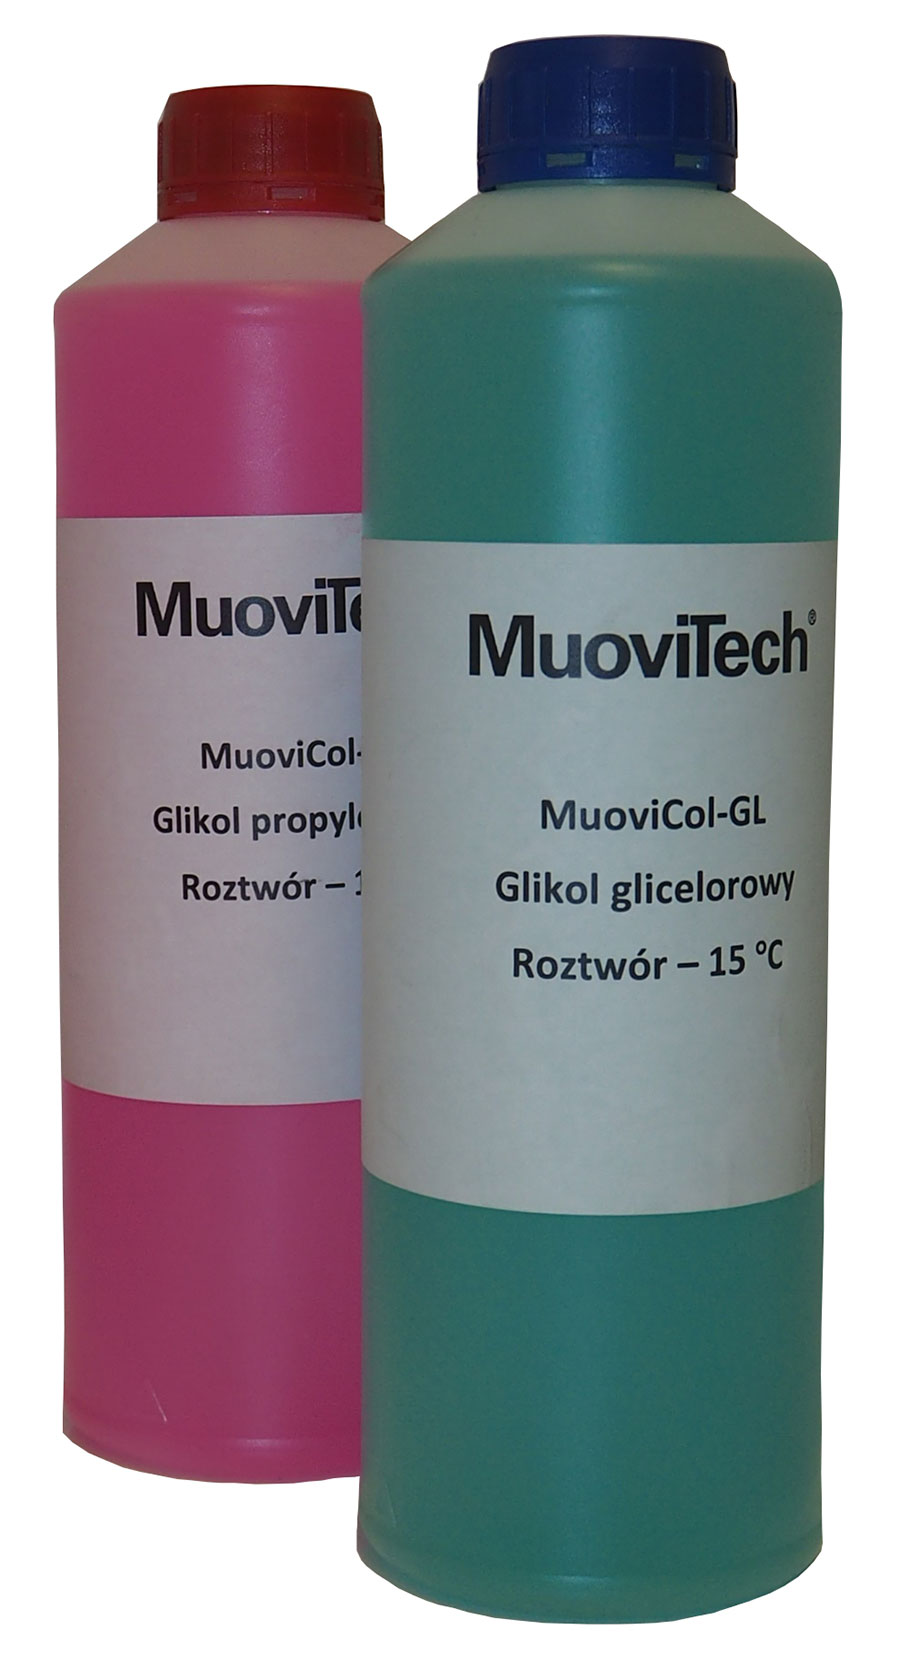 MuoviCol-P